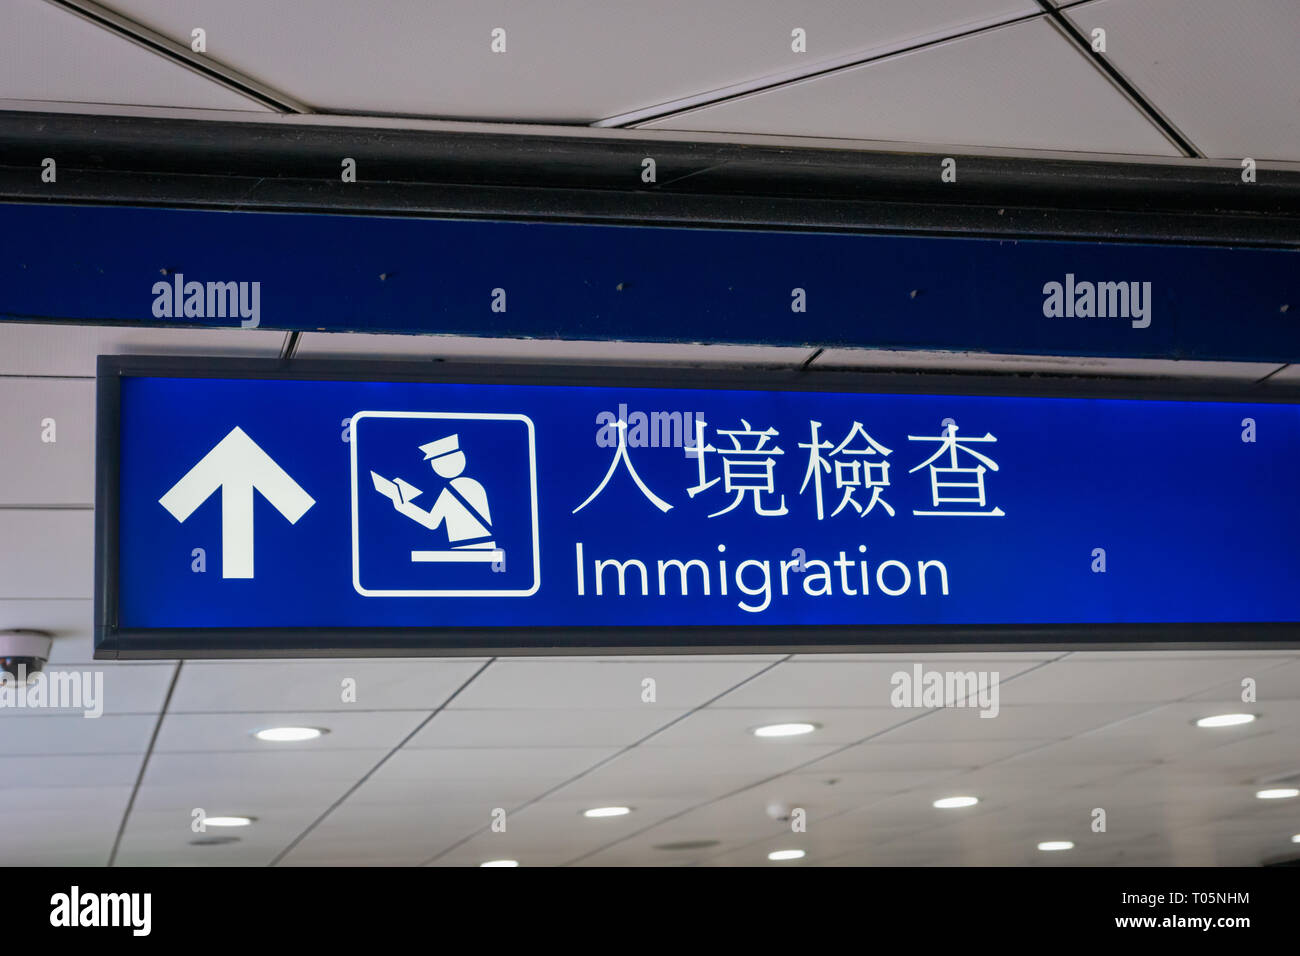 L'immigration de l'aéroport d'icône et de pancarte en anglais et en caractères chinois Banque D'Images